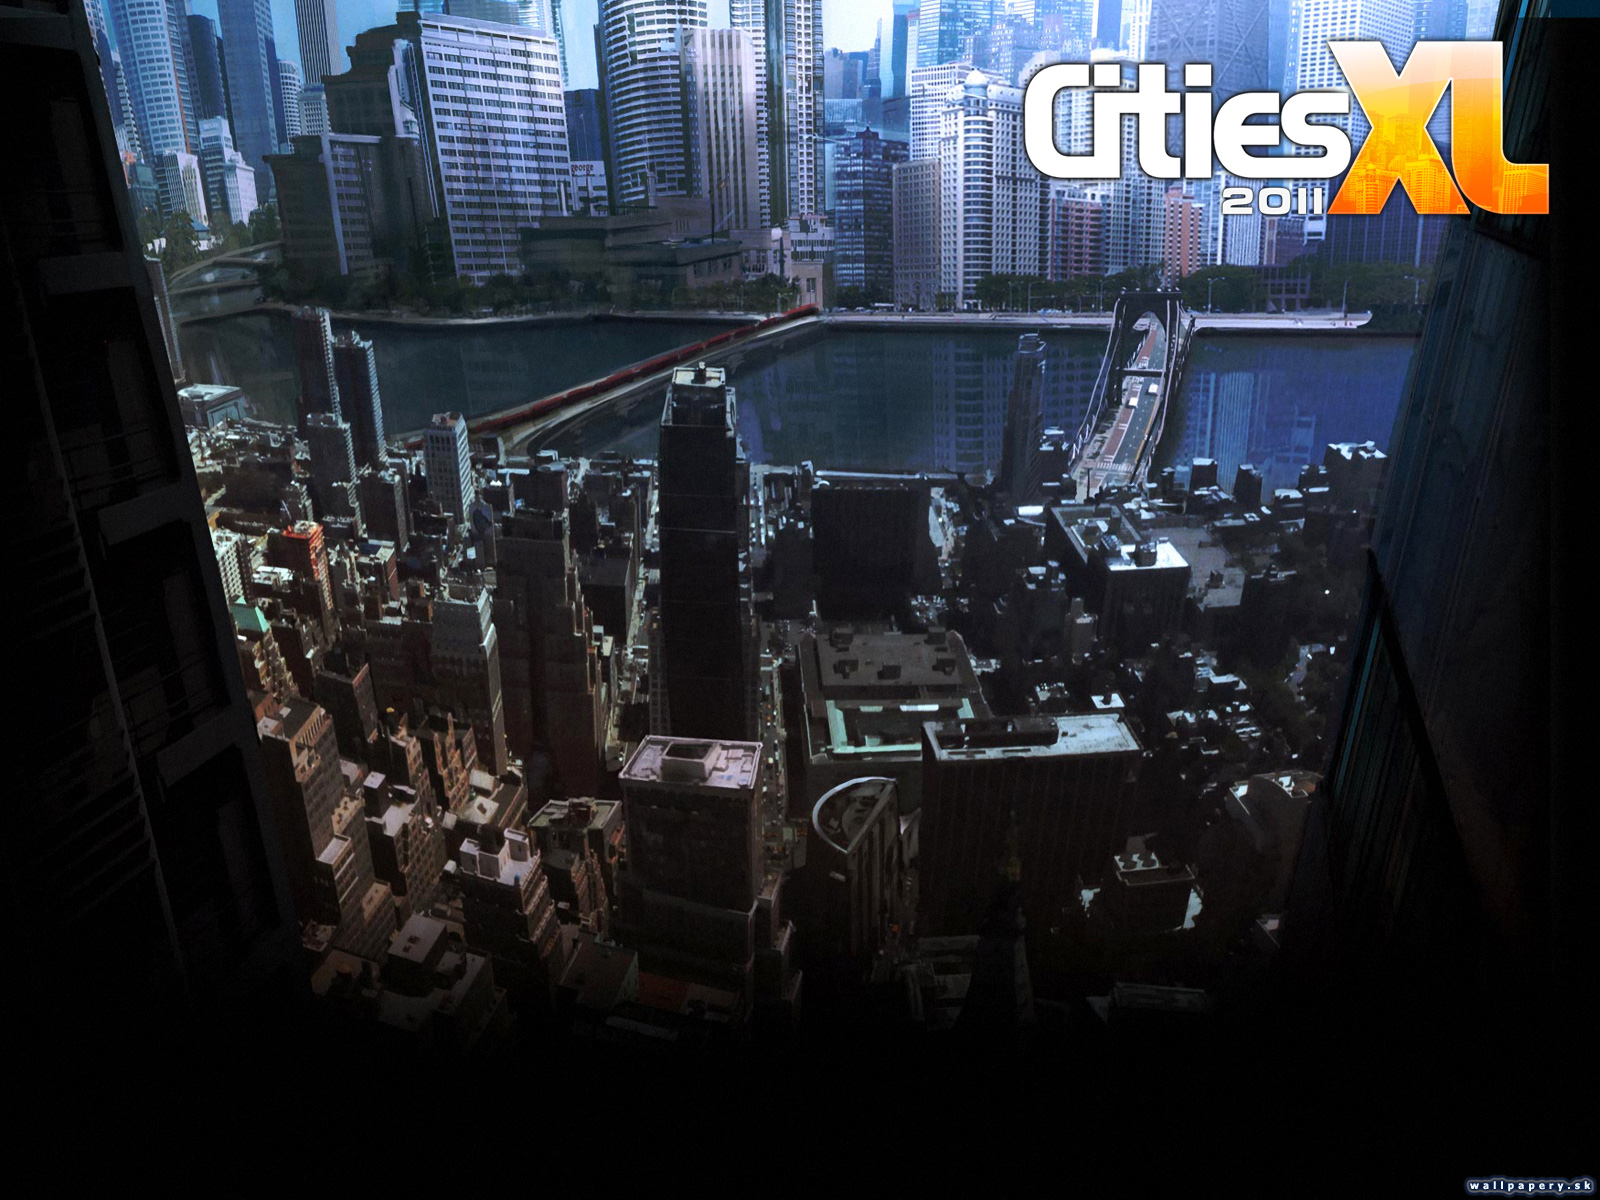 Cities XL 2011 - wallpaper 1